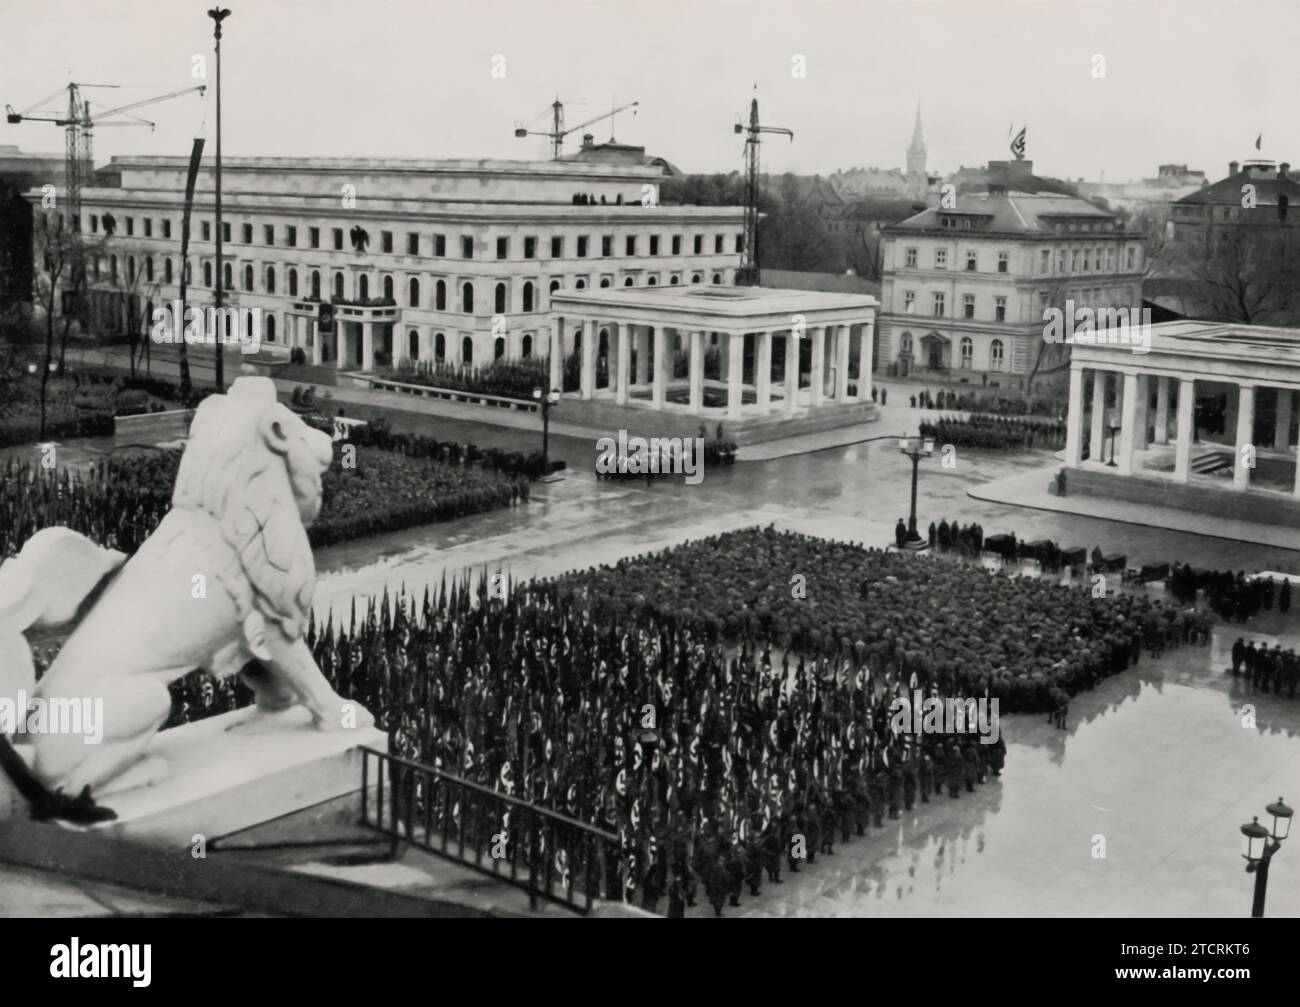 Il 9 novembre 1935, le formazioni del Partito Nazionalsocialista sono riunite sul quasi completato Königsplatz. Questa immagine cattura Adolf Hitler supervisionando l'evento, in piedi nella sua auto a tetto aperto e salutando. La data, significativa per commemorare il Putsch della Beer Hall, e il luogo, Königsplatz, un luogo chiave per i raduni nazisti, sottolineano l'importanza di questo giorno nel calendario nazista. La presenza di Hitler e le formazioni meticolosamente organizzate riflettono l'enfasi del regime sulla disciplina, l'ordine e il potere simbolico degli incontri di massa. Foto Stock